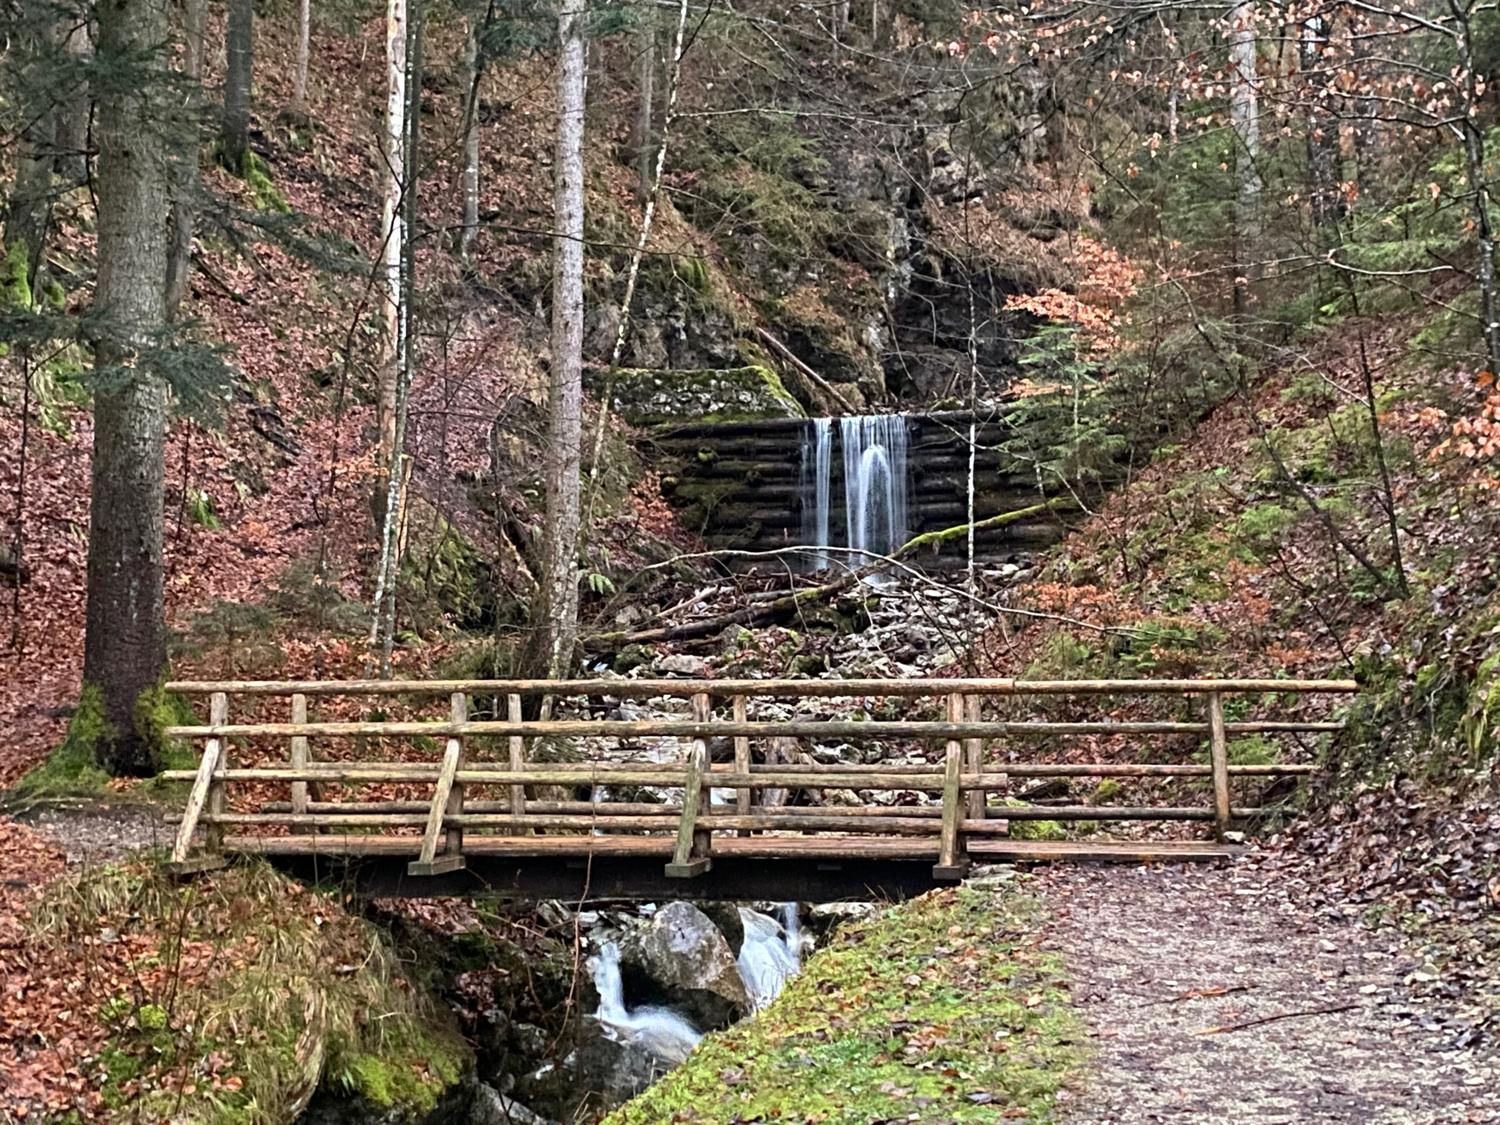 A run / hike up the Brecherspitz